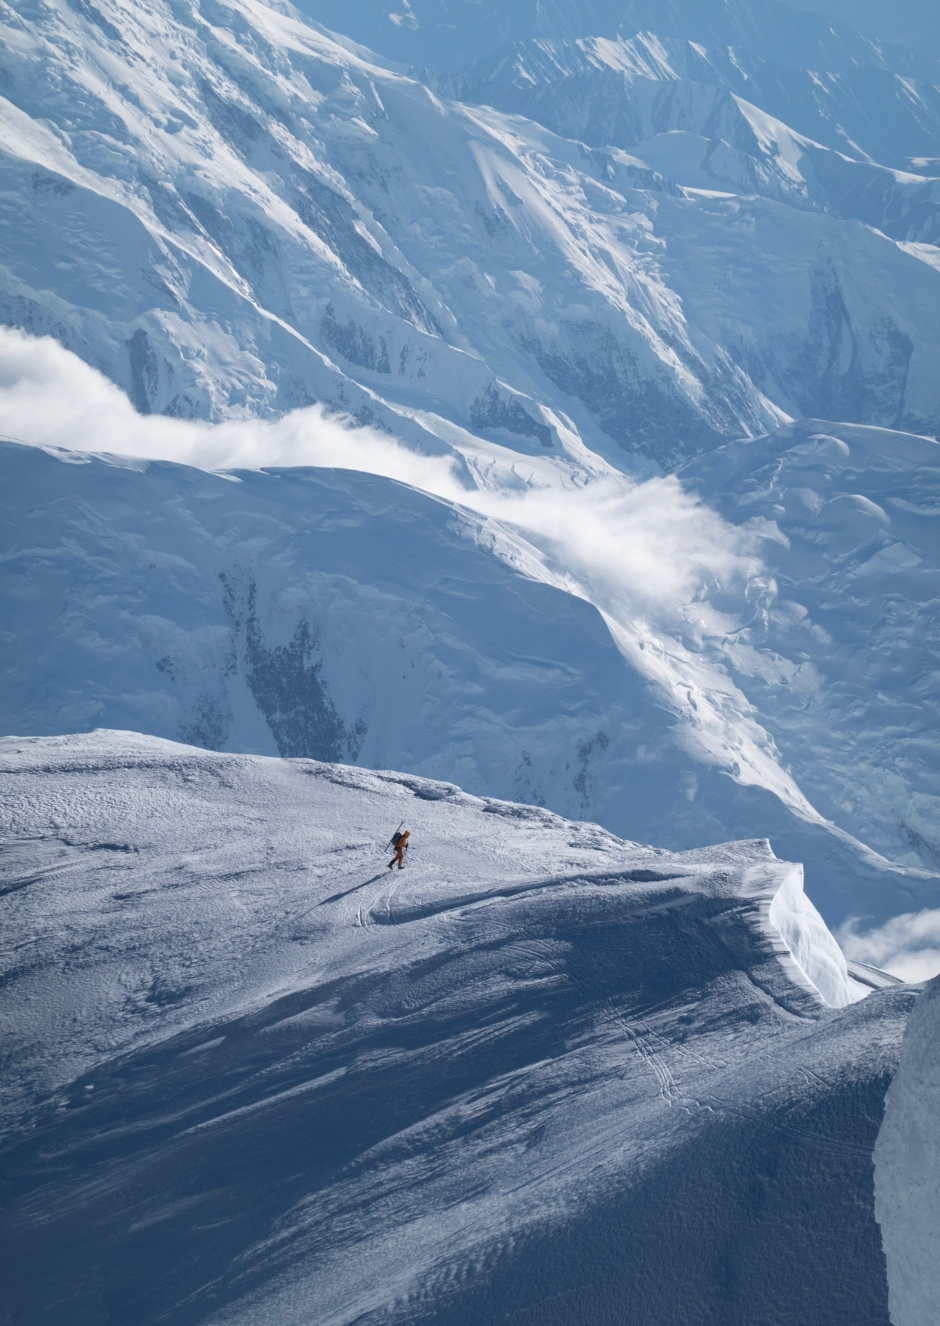 カッシン・リッジへのソロ登攀は、スキーを担いでのものとなった。<br />
Photo: Zach Novak